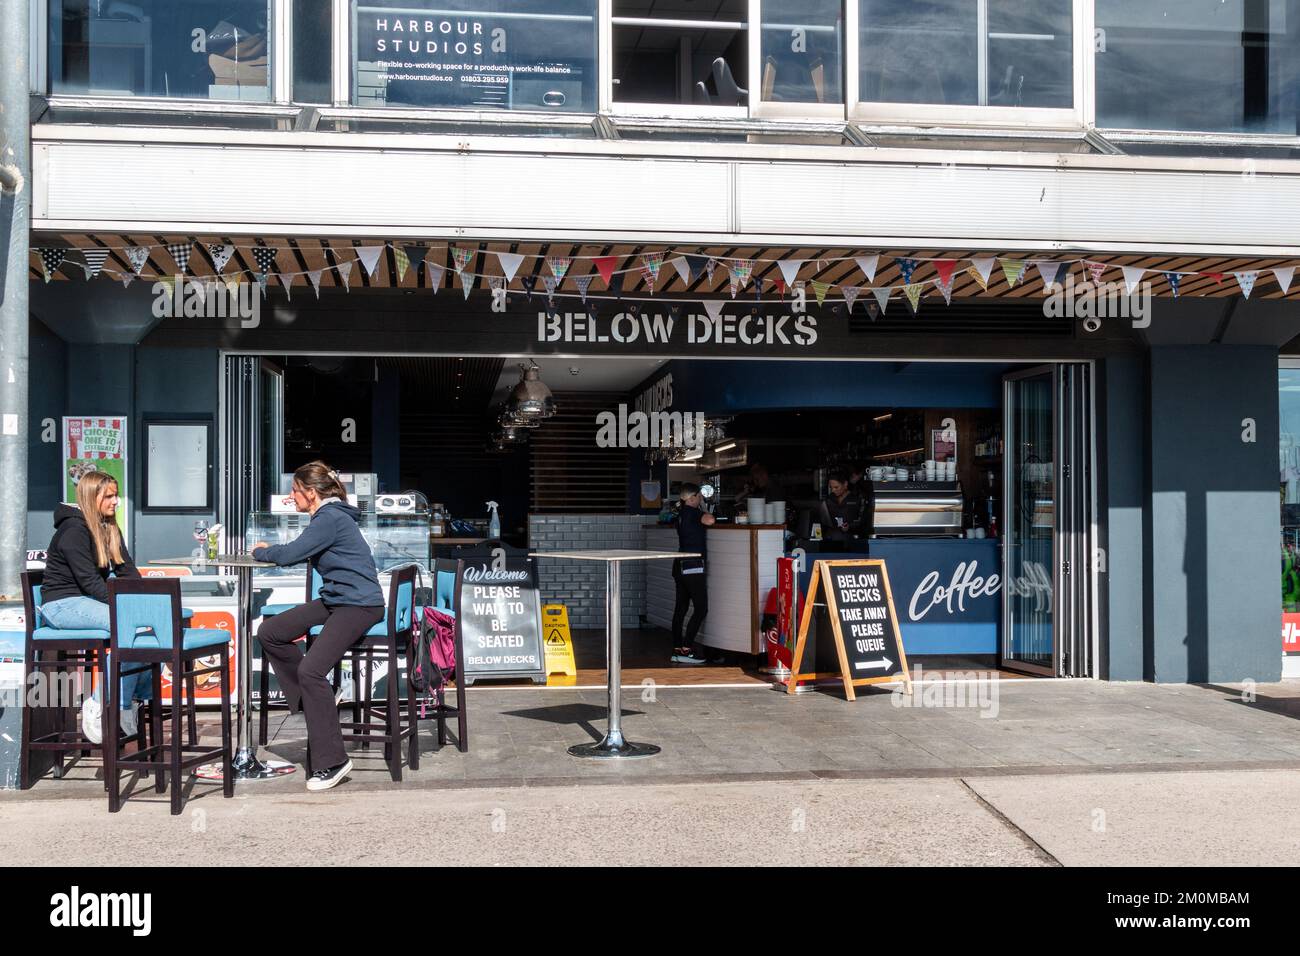 The Below Decks cafe and bar overlooking Torquay Harbour, Devon, UK Stock Photo